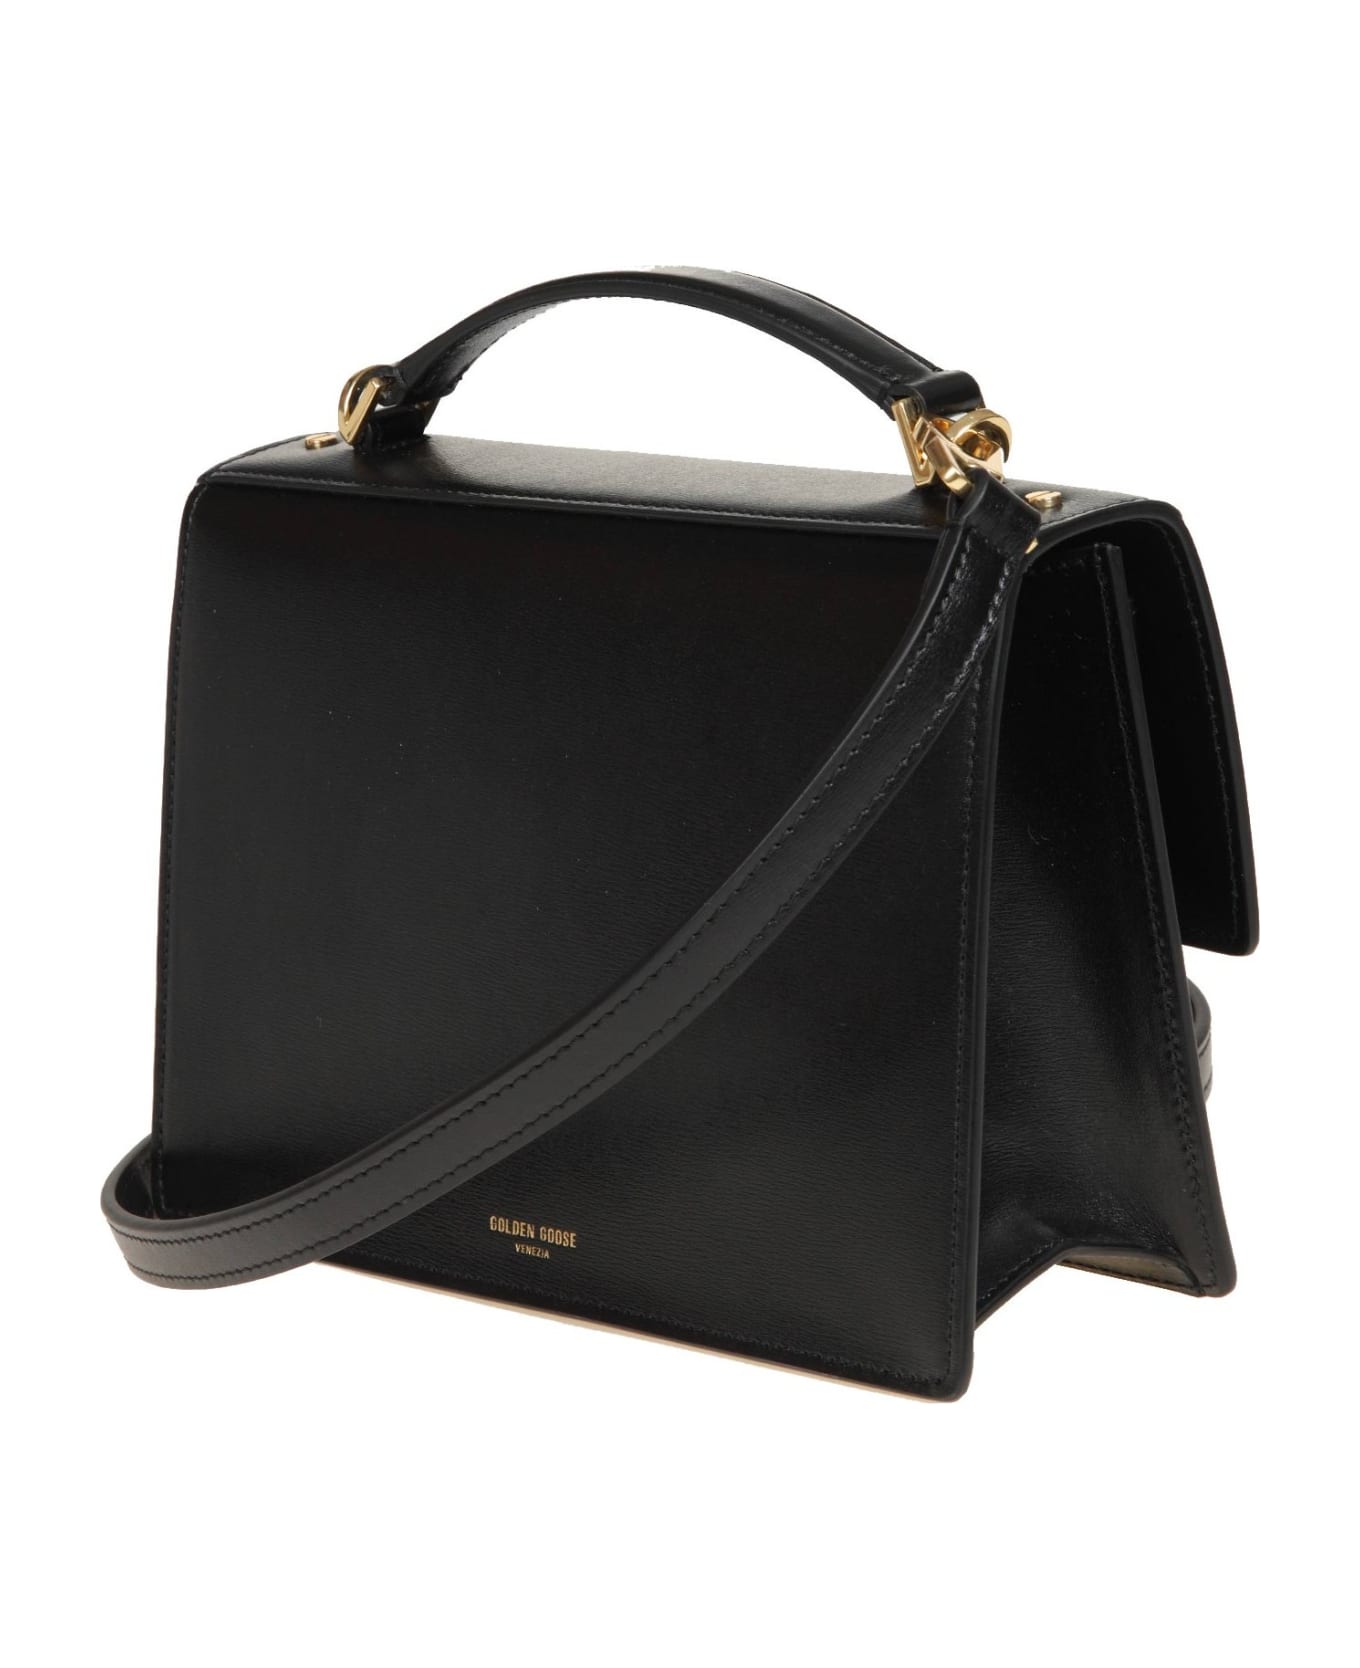 Golden Goose Venezia Handbag In Black Leather - Black